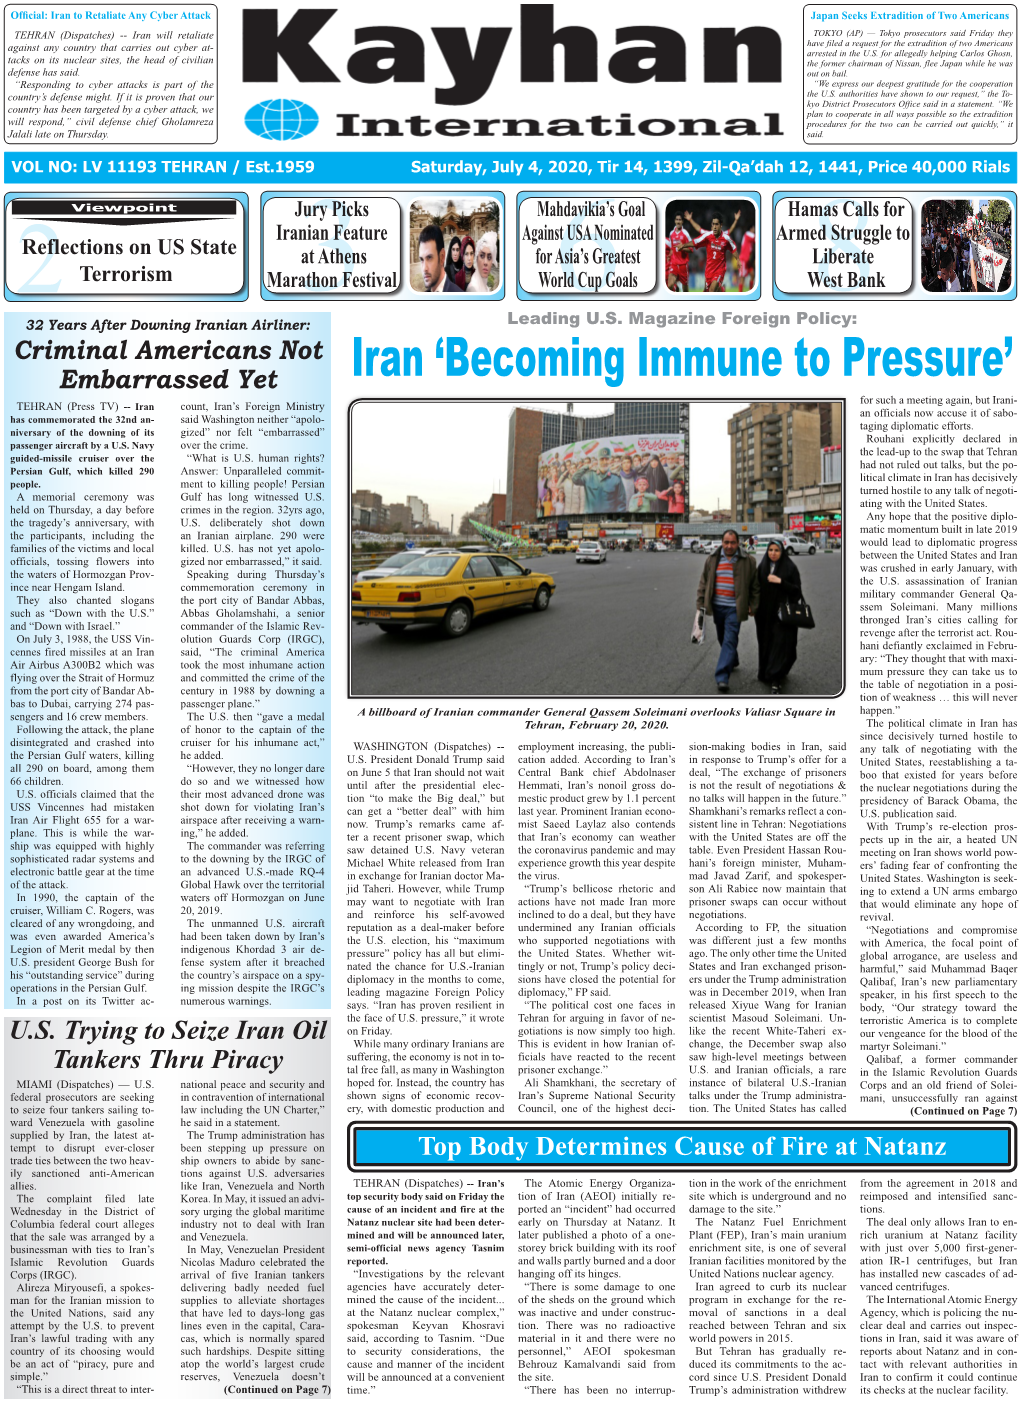 Iran 'Becoming Immune to Pressure'